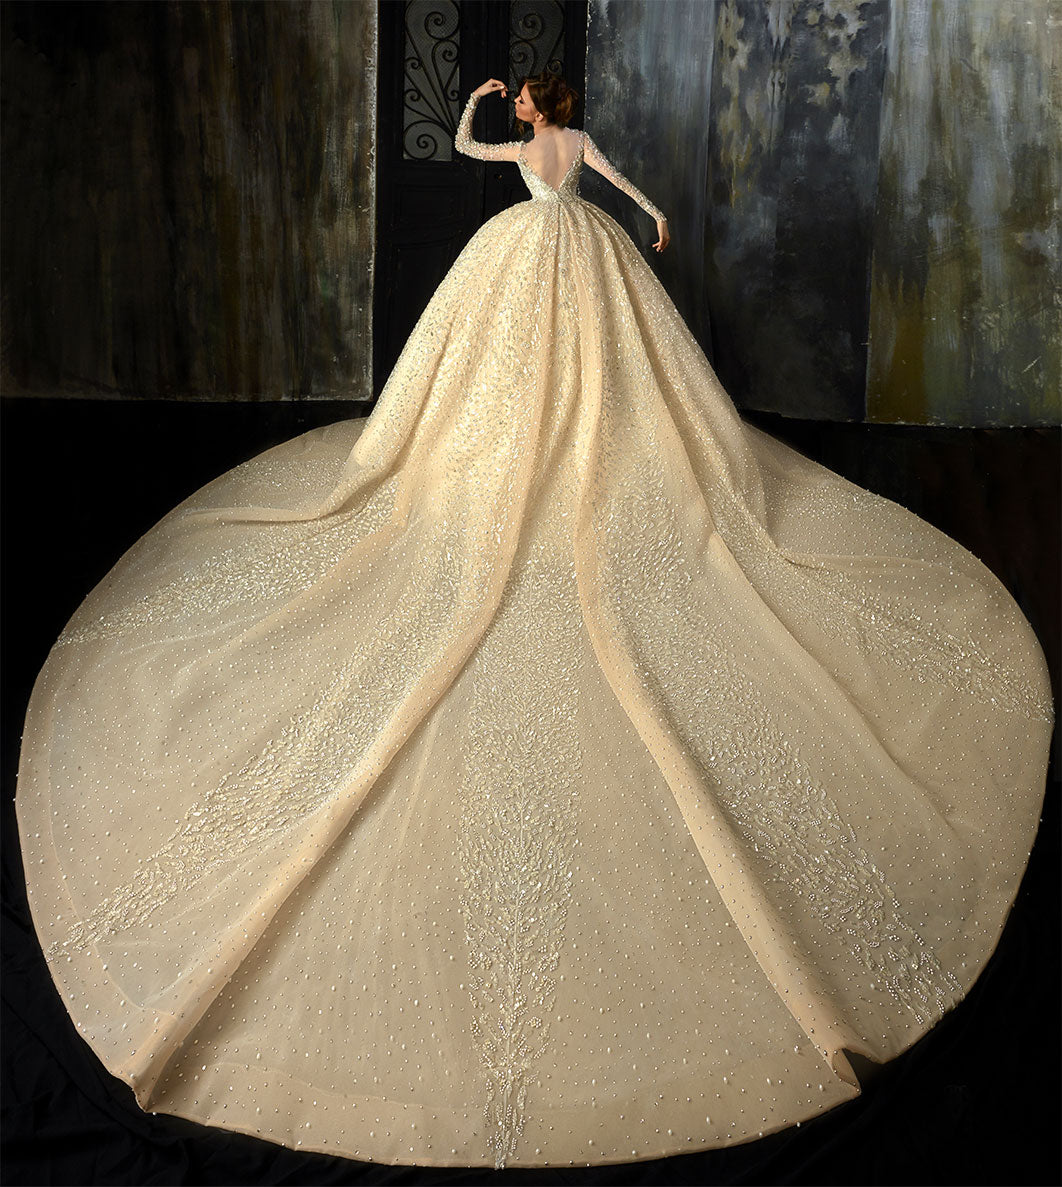 Luxurious Golden Hued Ball Gown Wedding Dress